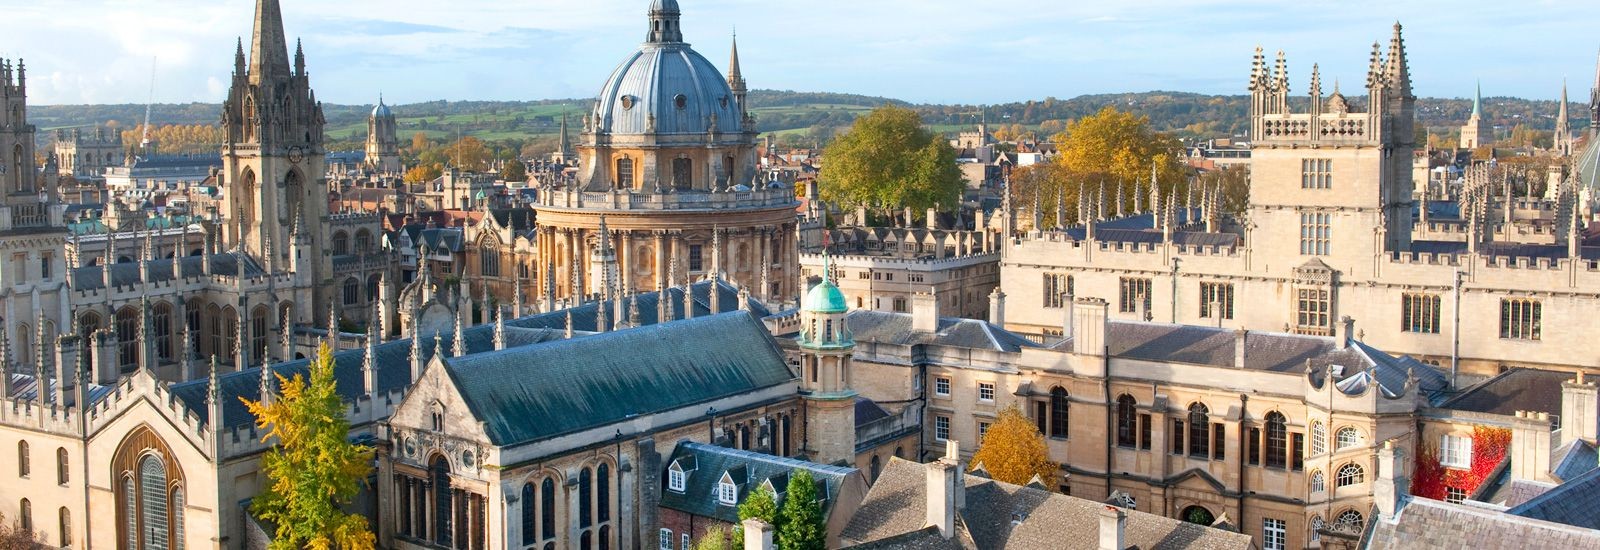 Universidade de Oxford, no Reino Unido (Foto: Divulgação/Universidade de Oxford)